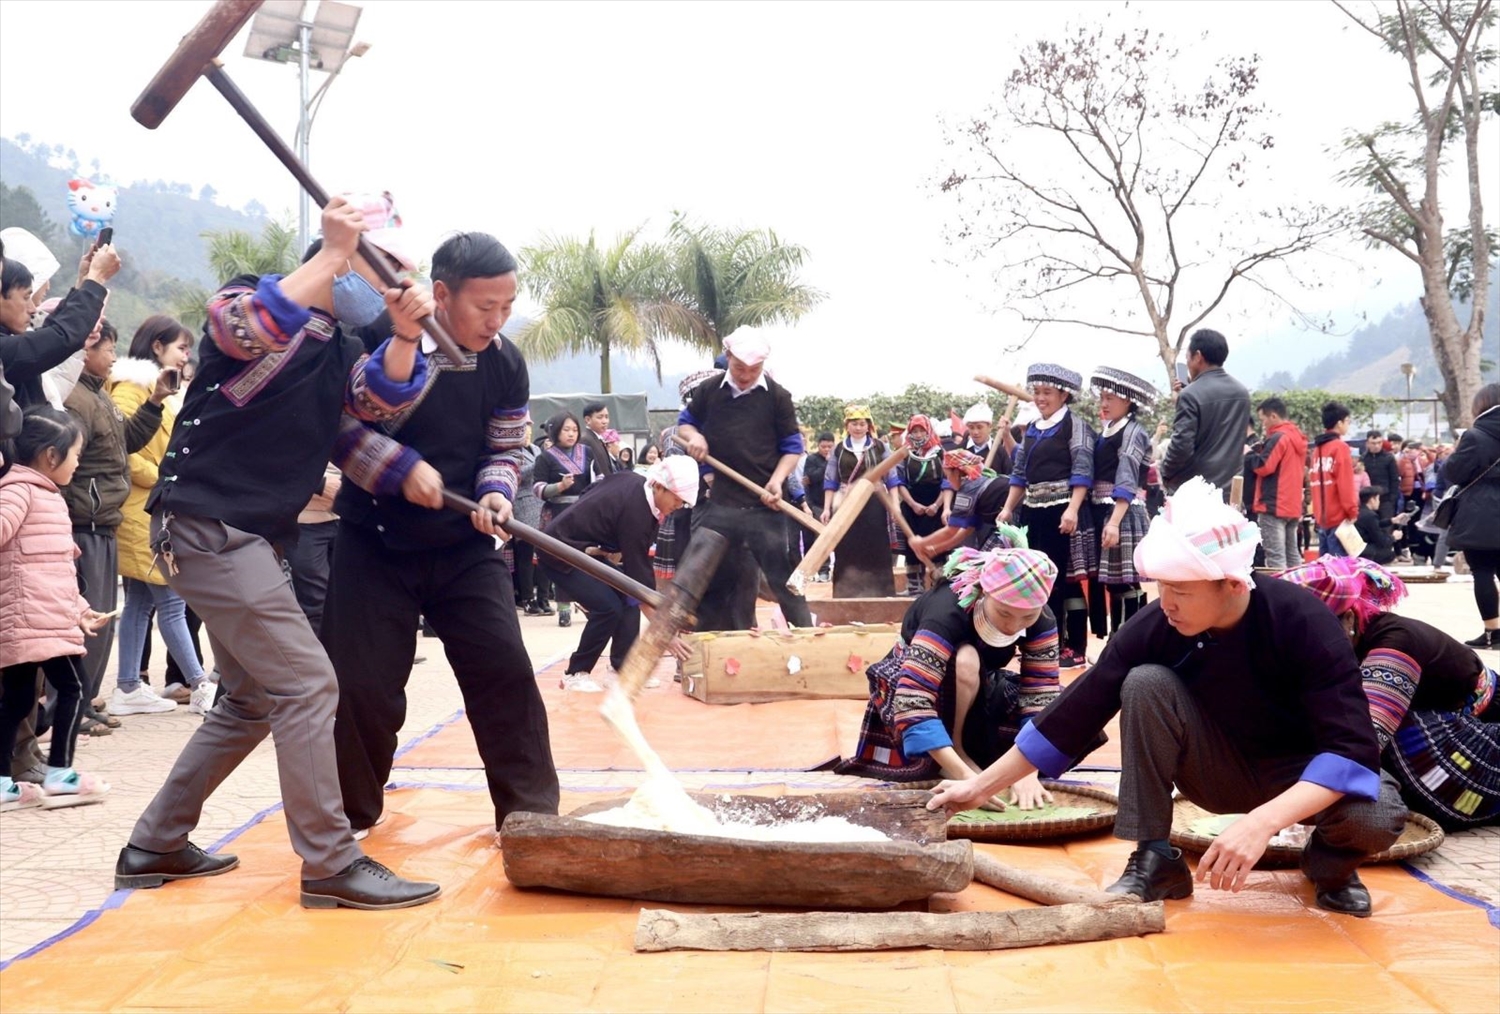 Thi giã bánh dày trong lễ hội xuân của người Mông. (Ảnh tư liệu)